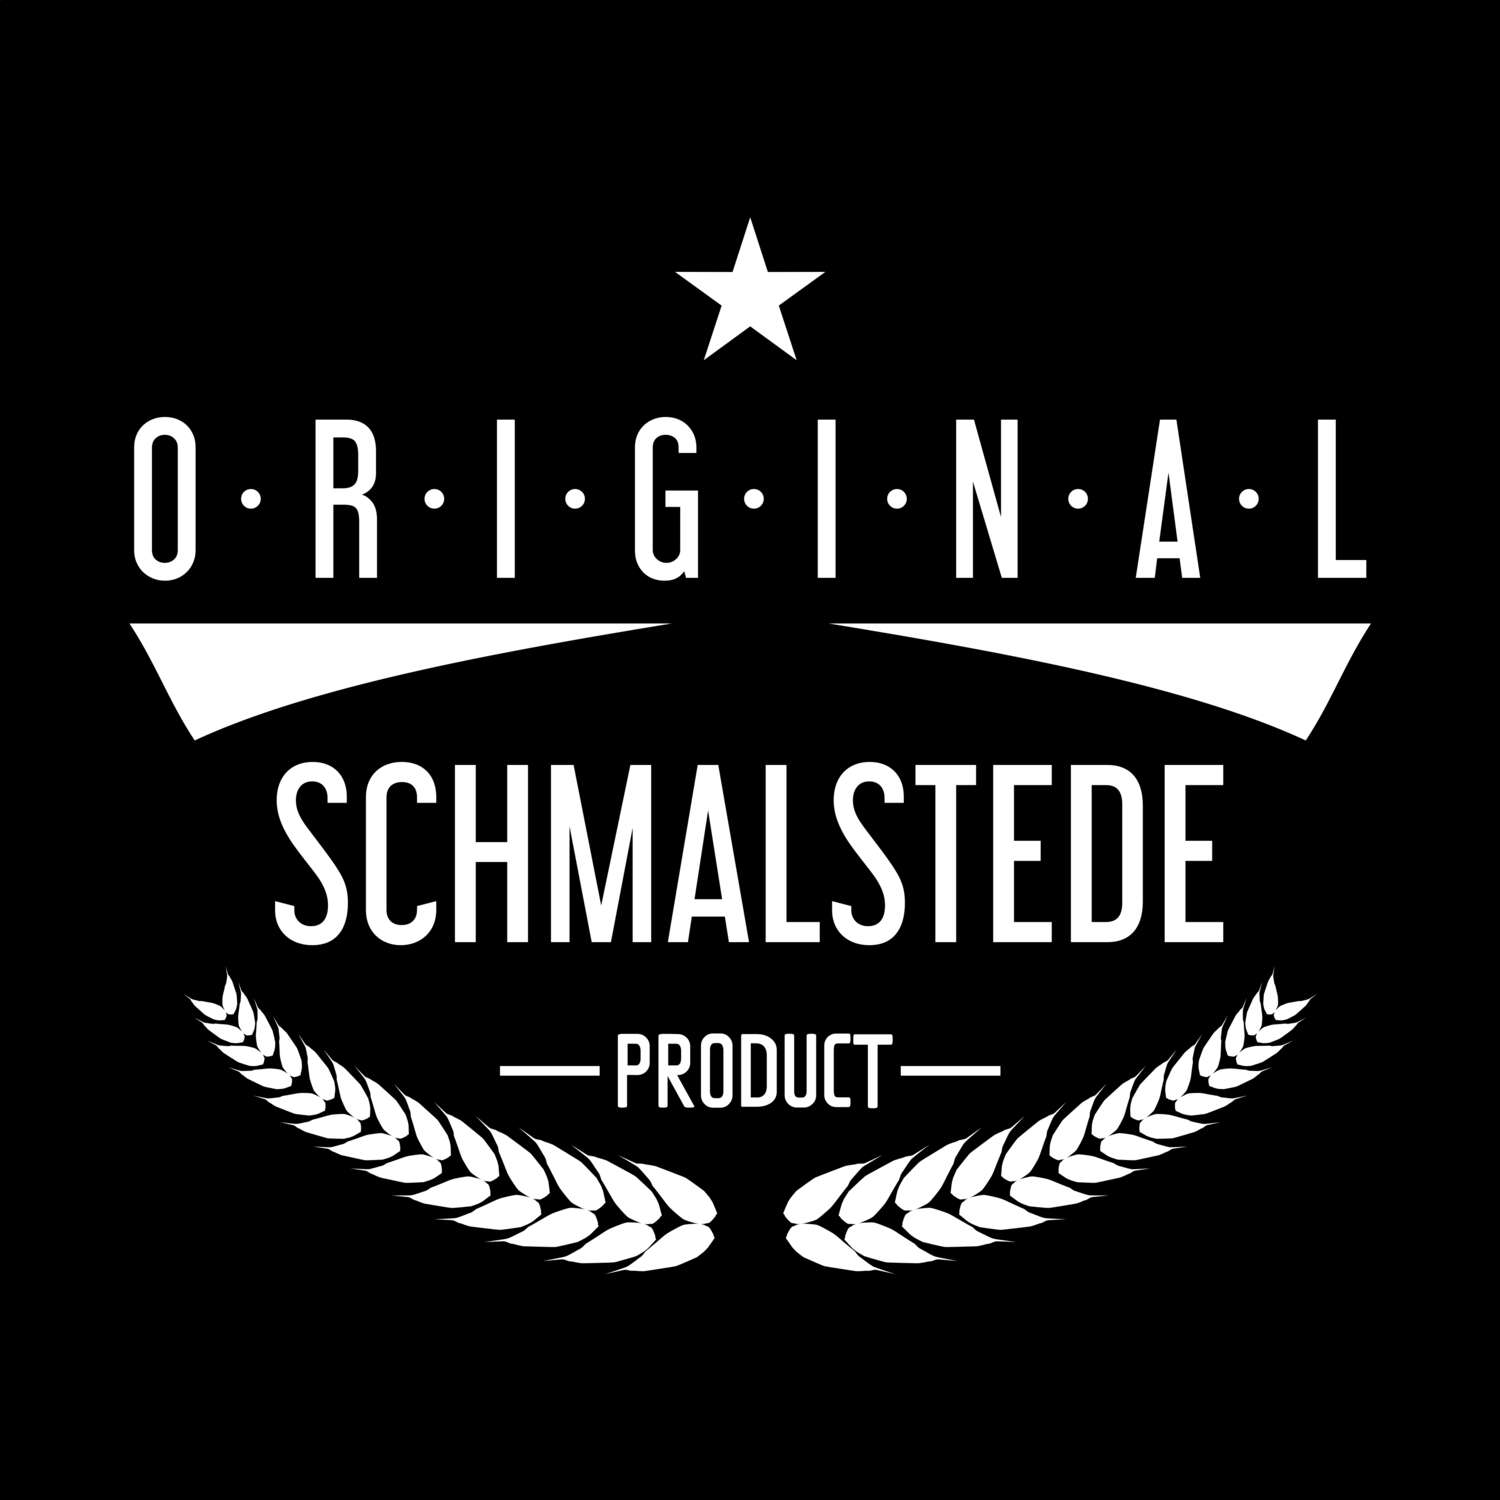 Schmalstede T-Shirt »Original Product«